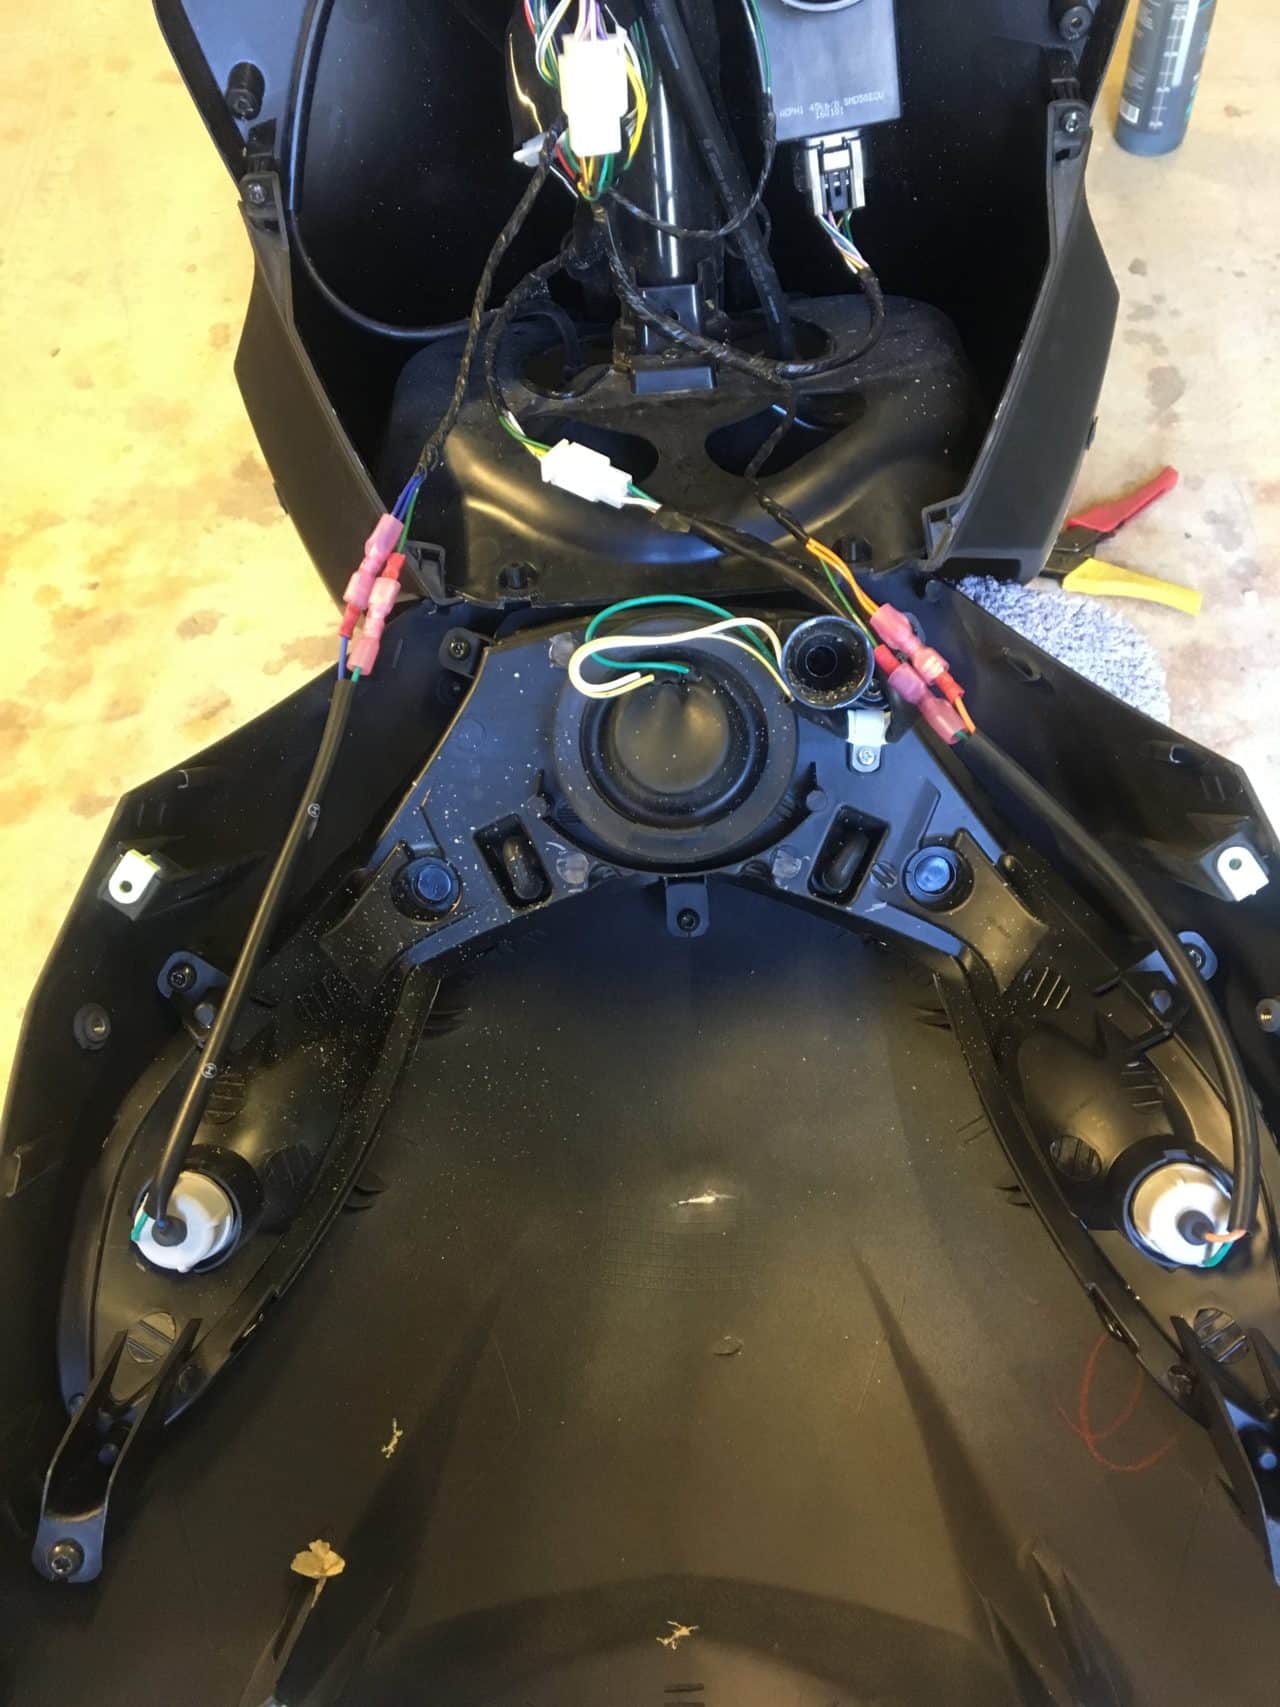 Repairing Gaps In Lamp On Peugeot Moped